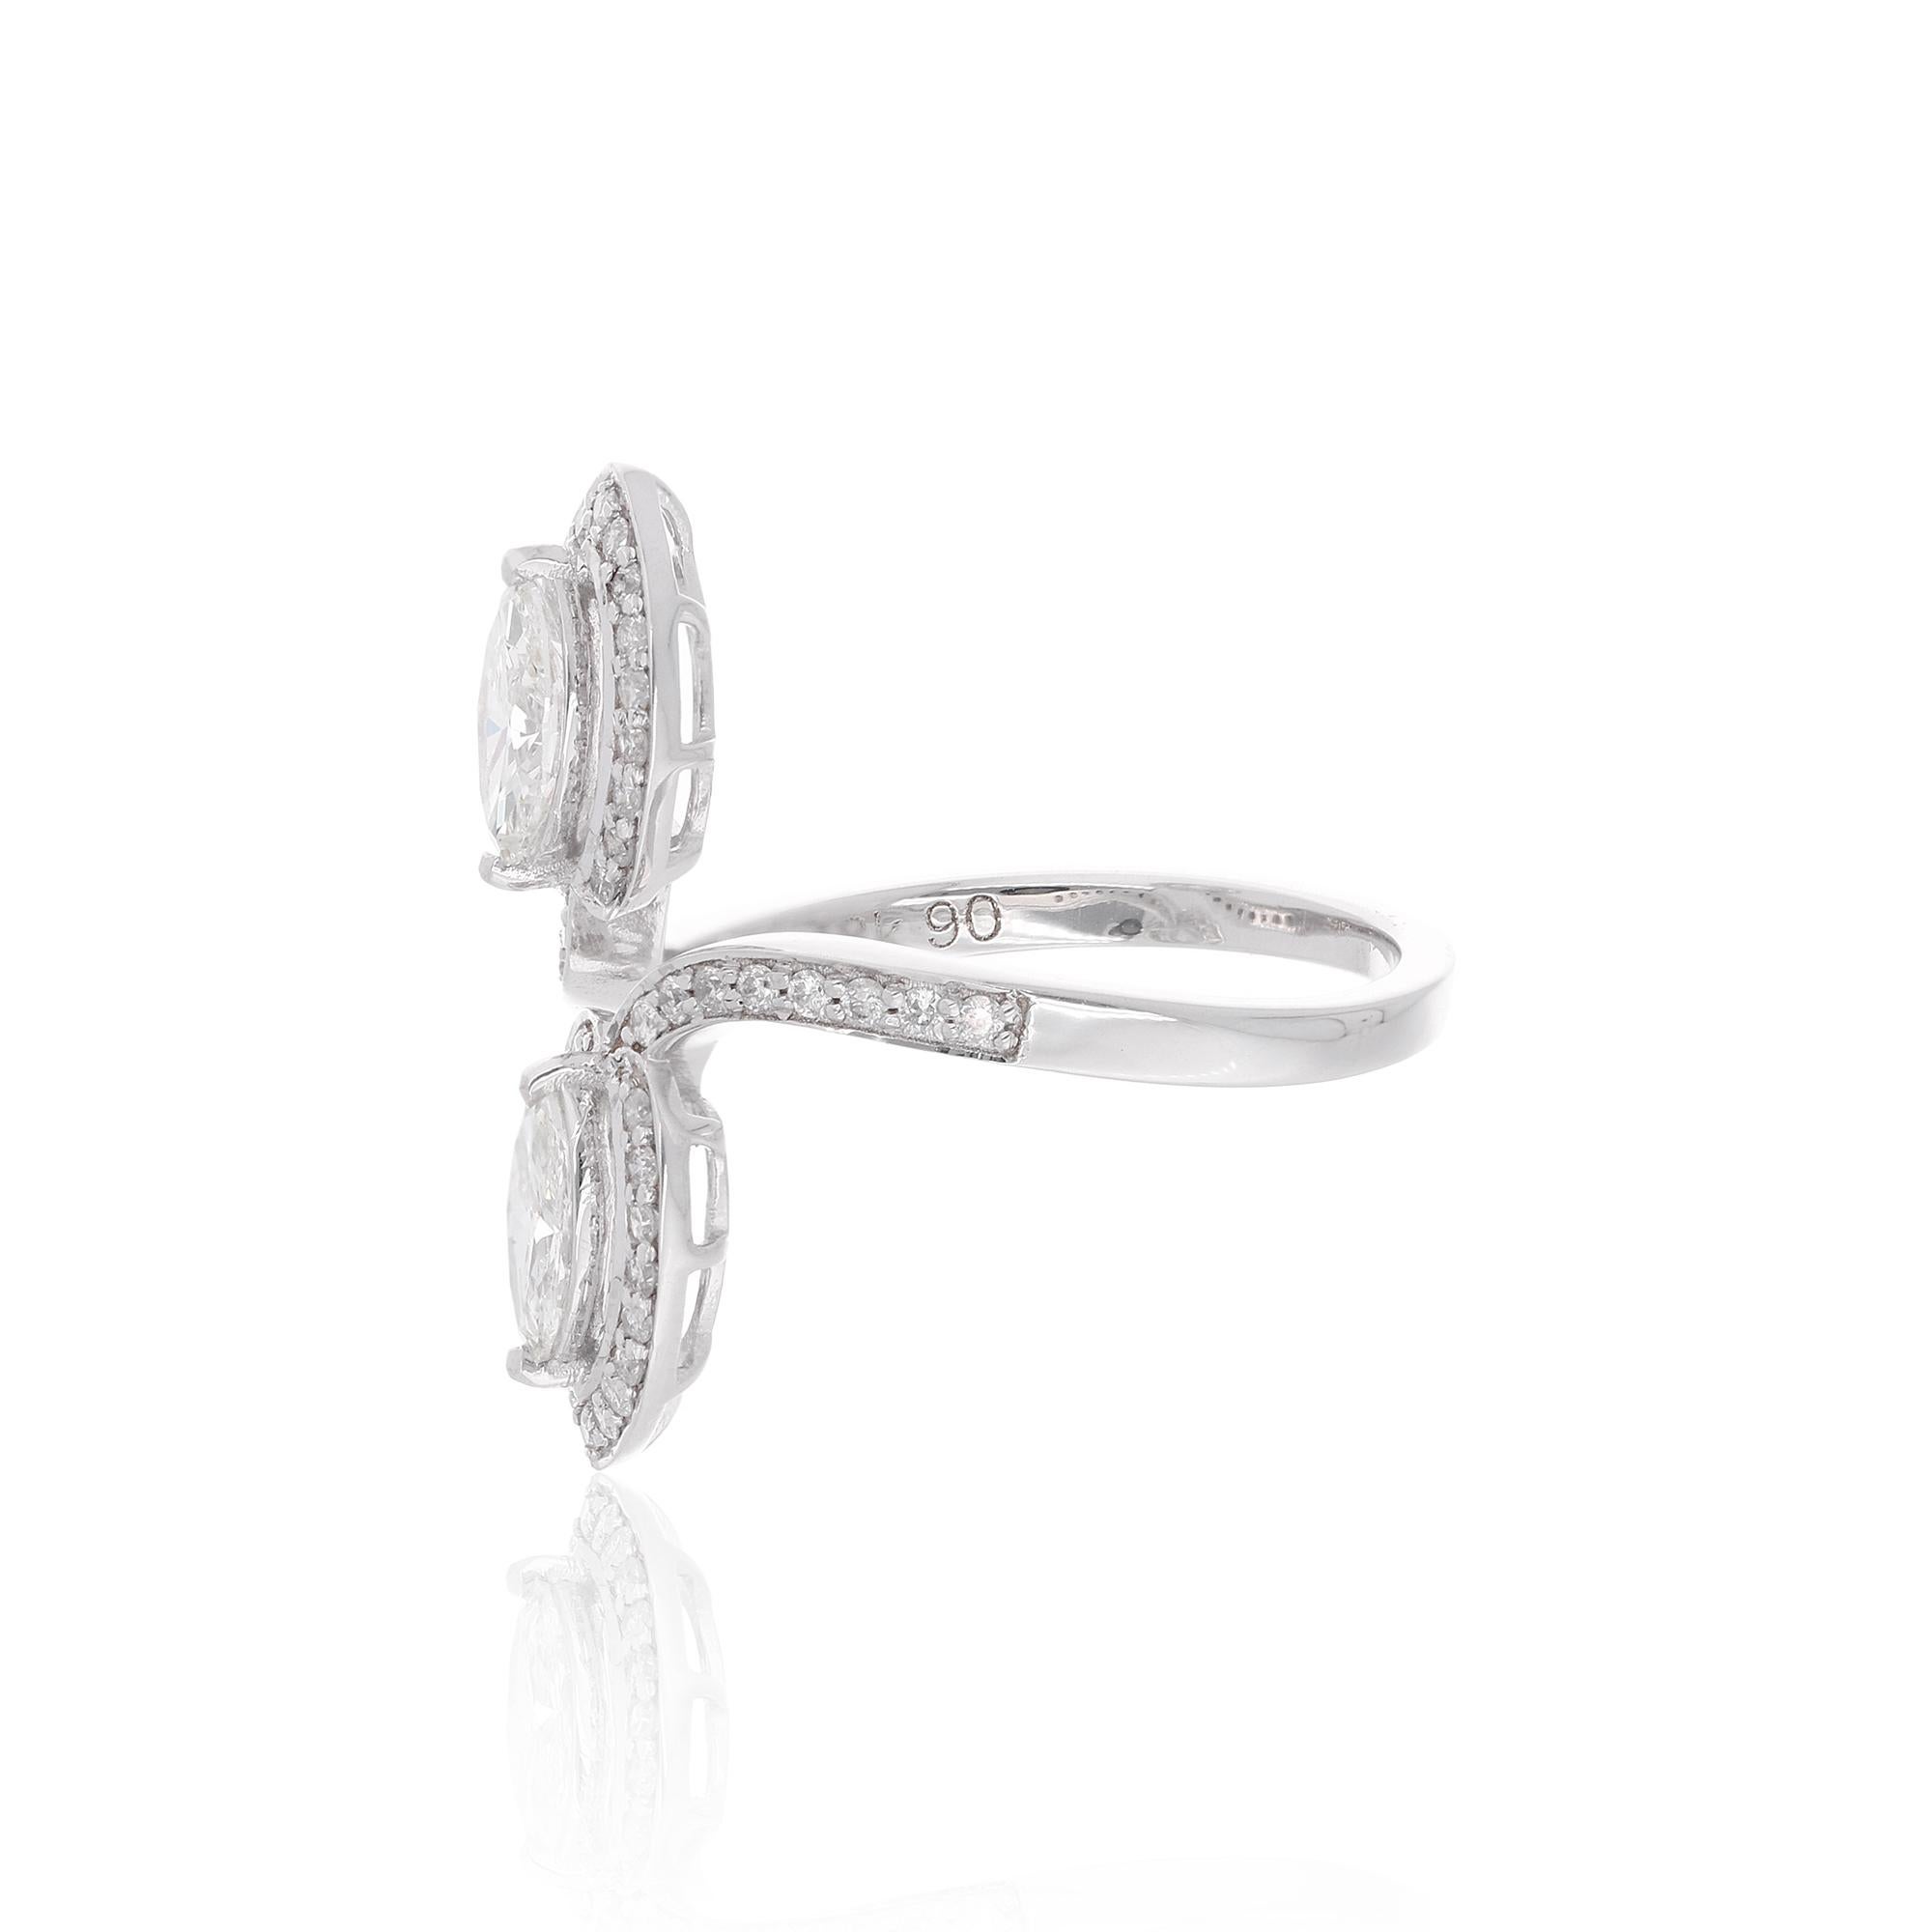 Créez la tendance avec cette élégante bague en or blanc 14 carats sertie de diamants étincelants. Faites plaisir à vos yeux en portant cet ornement exclusif.

✧✧Welcome To Our Shop Spectrum Jewels✧

